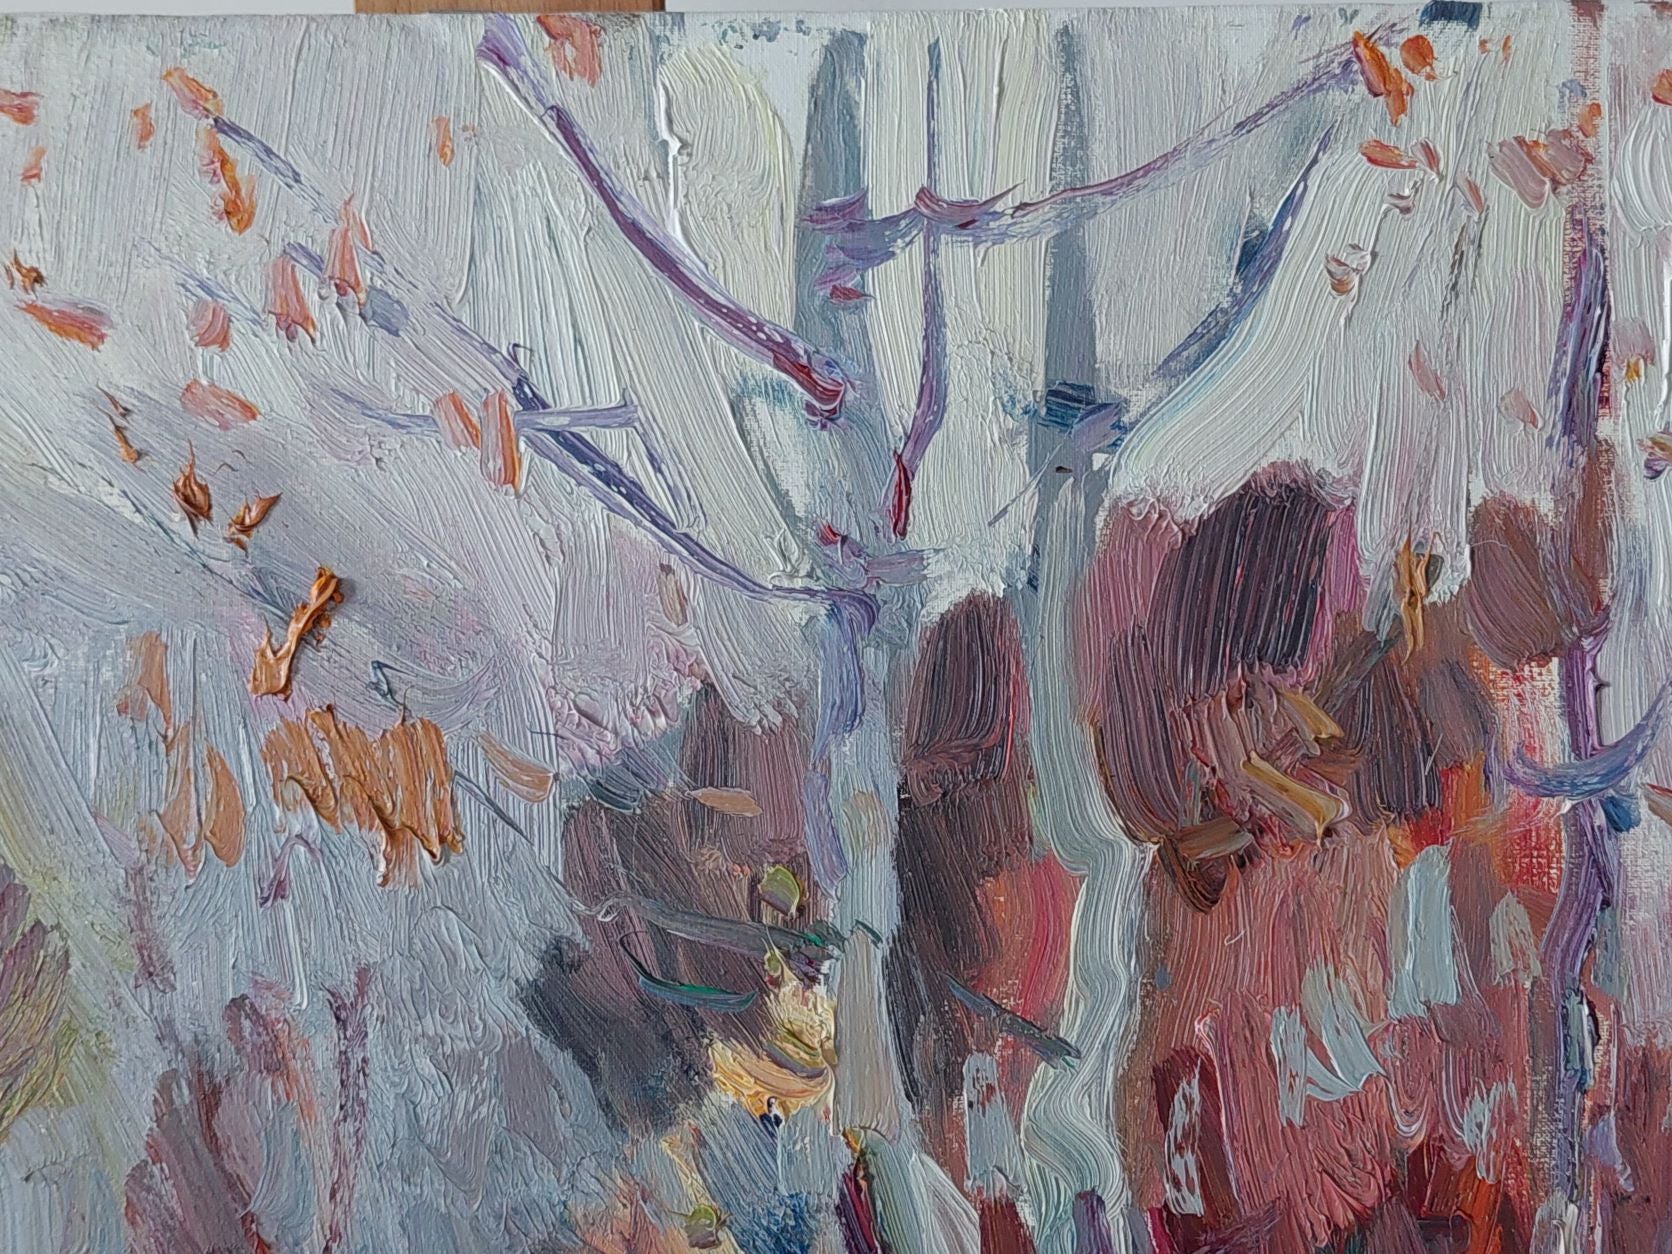 Birches (2020) by Oleksandr Khrapachov